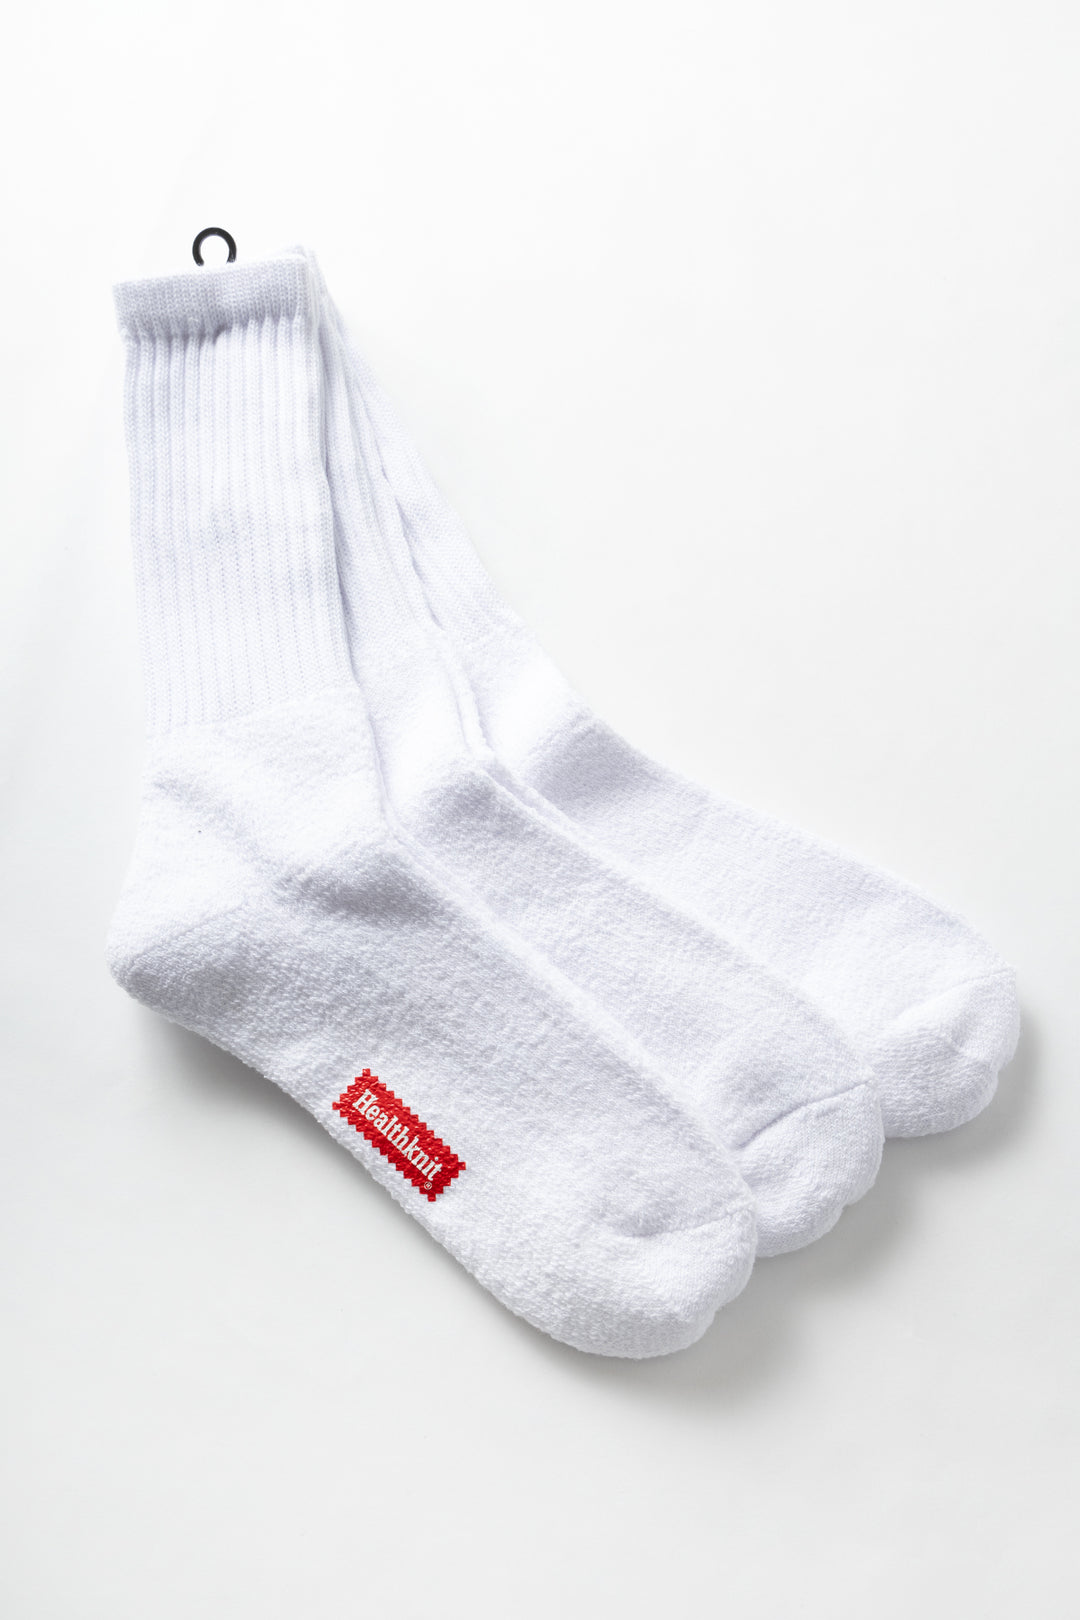 Healthknit white sock